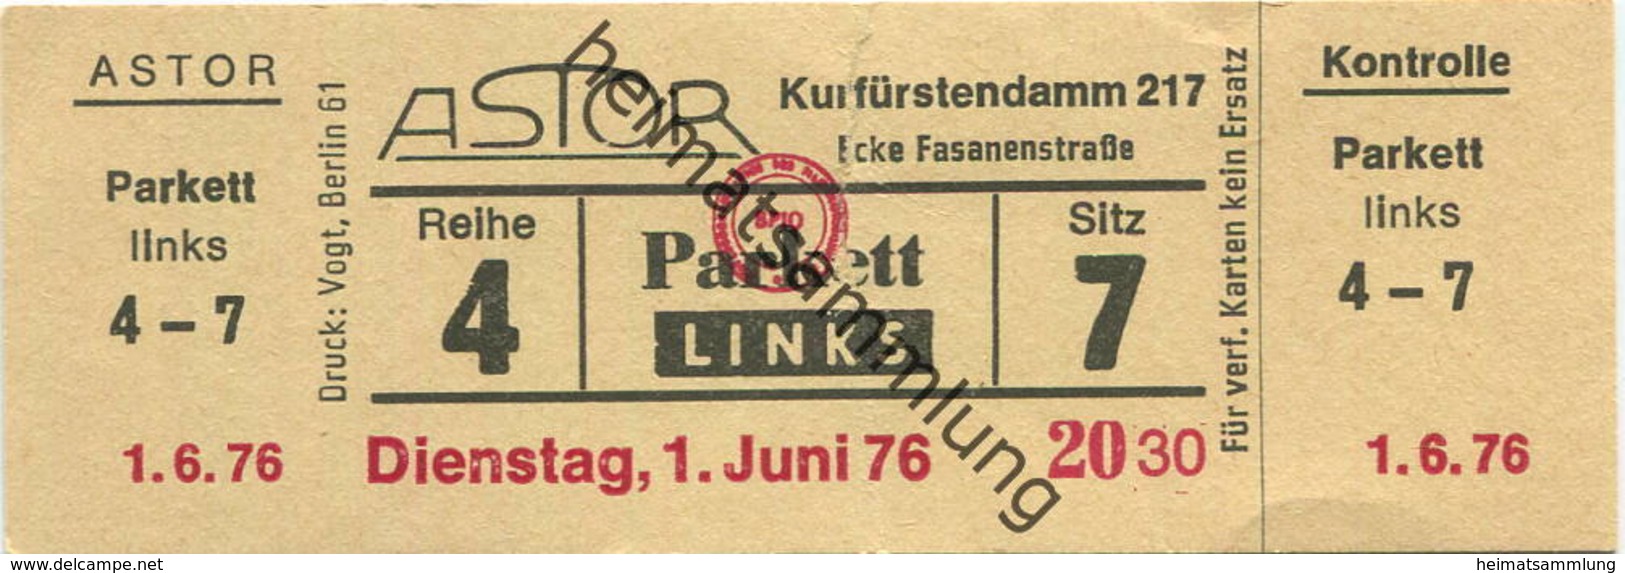 Deutschland - Astor Berlin Kurfürstendamm 217 - Kinokarte 1976 - Biglietti D'ingresso